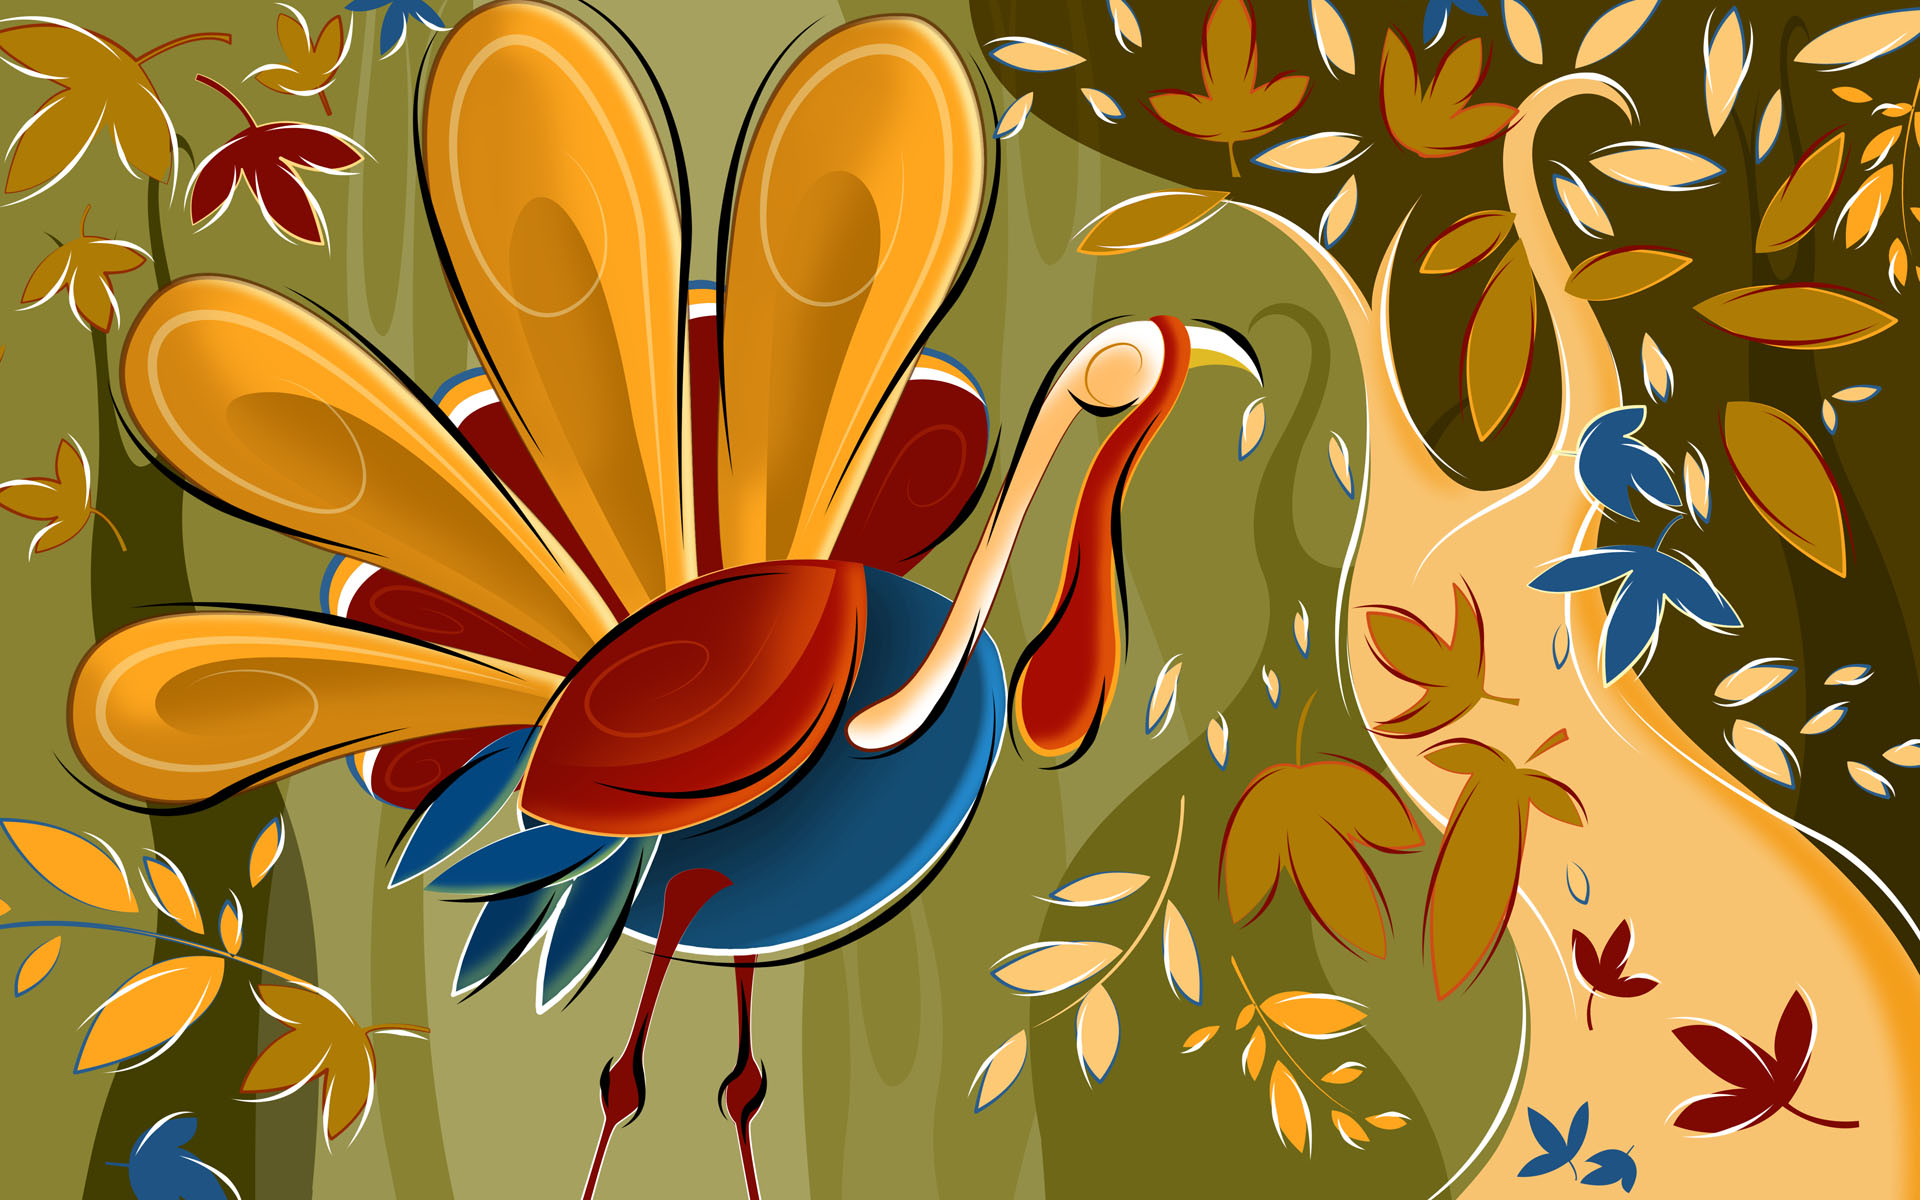 Thanksgiving Cartoon Wallpaper